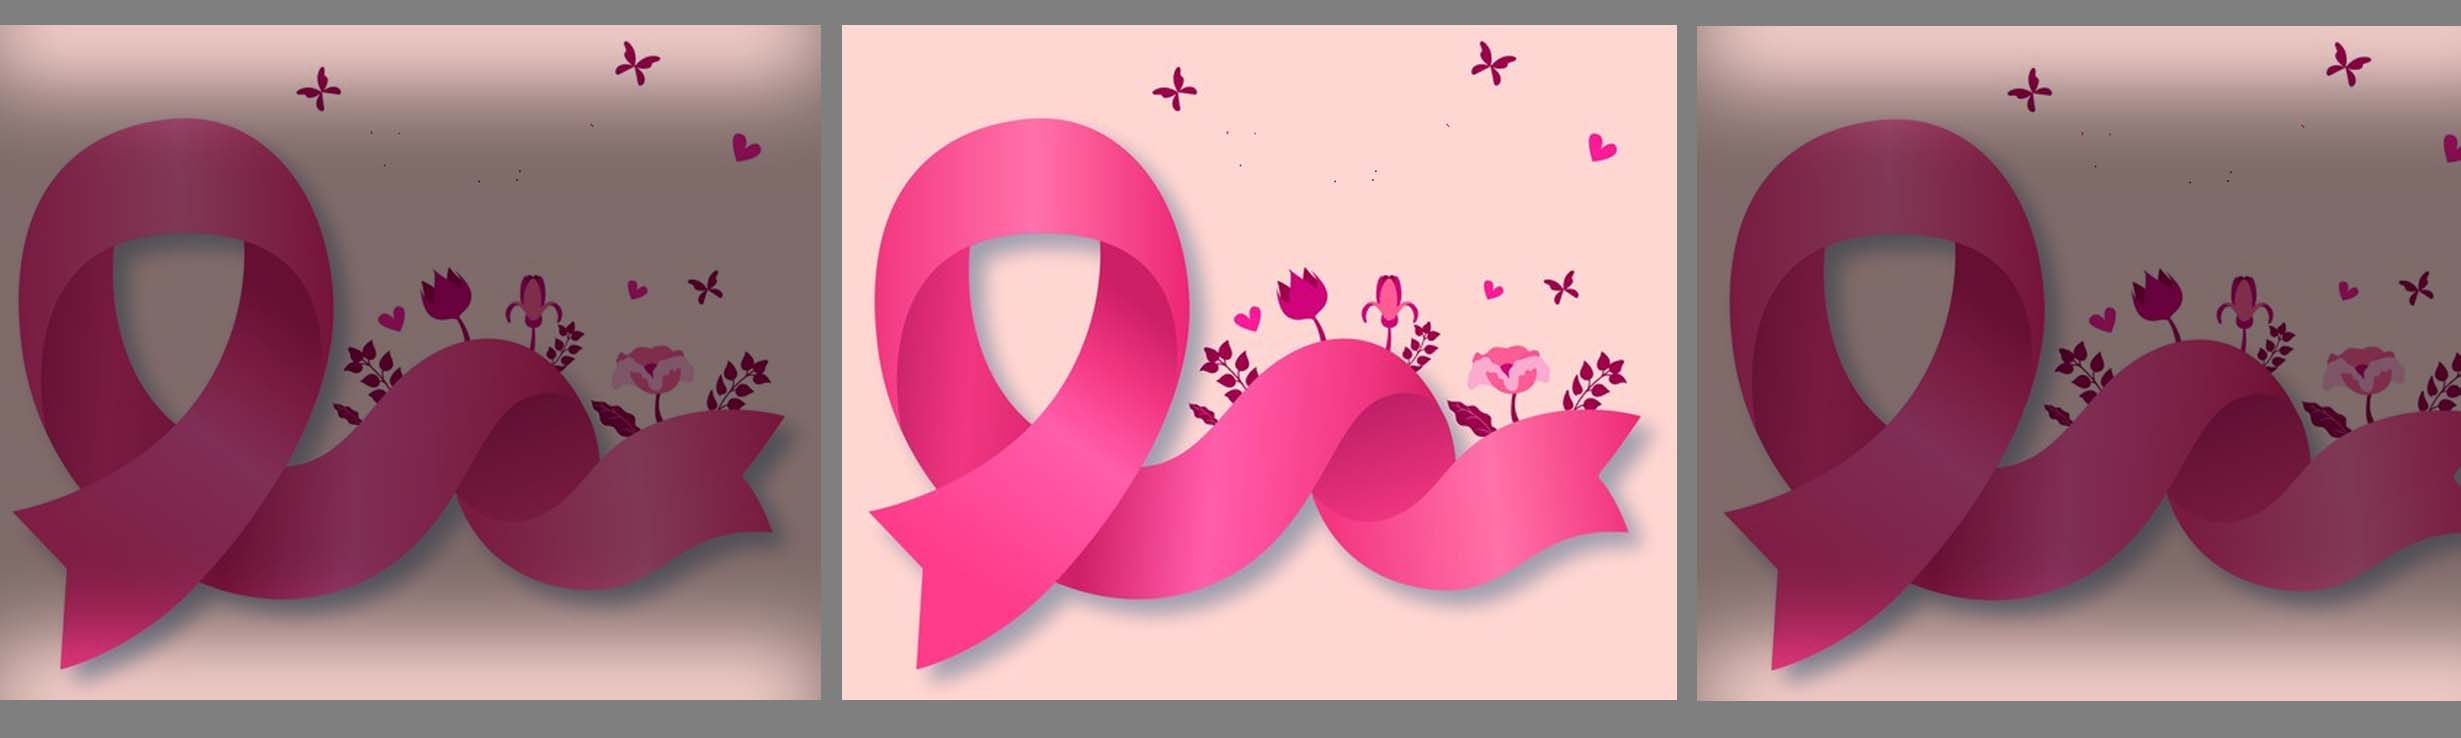 Sinteps apoia o ‘Outubro Rosa’: Número de mamografias ainda é baixo devido à pandemia, mas esse cuidado é essencial. Veja por que e ajude na campanha